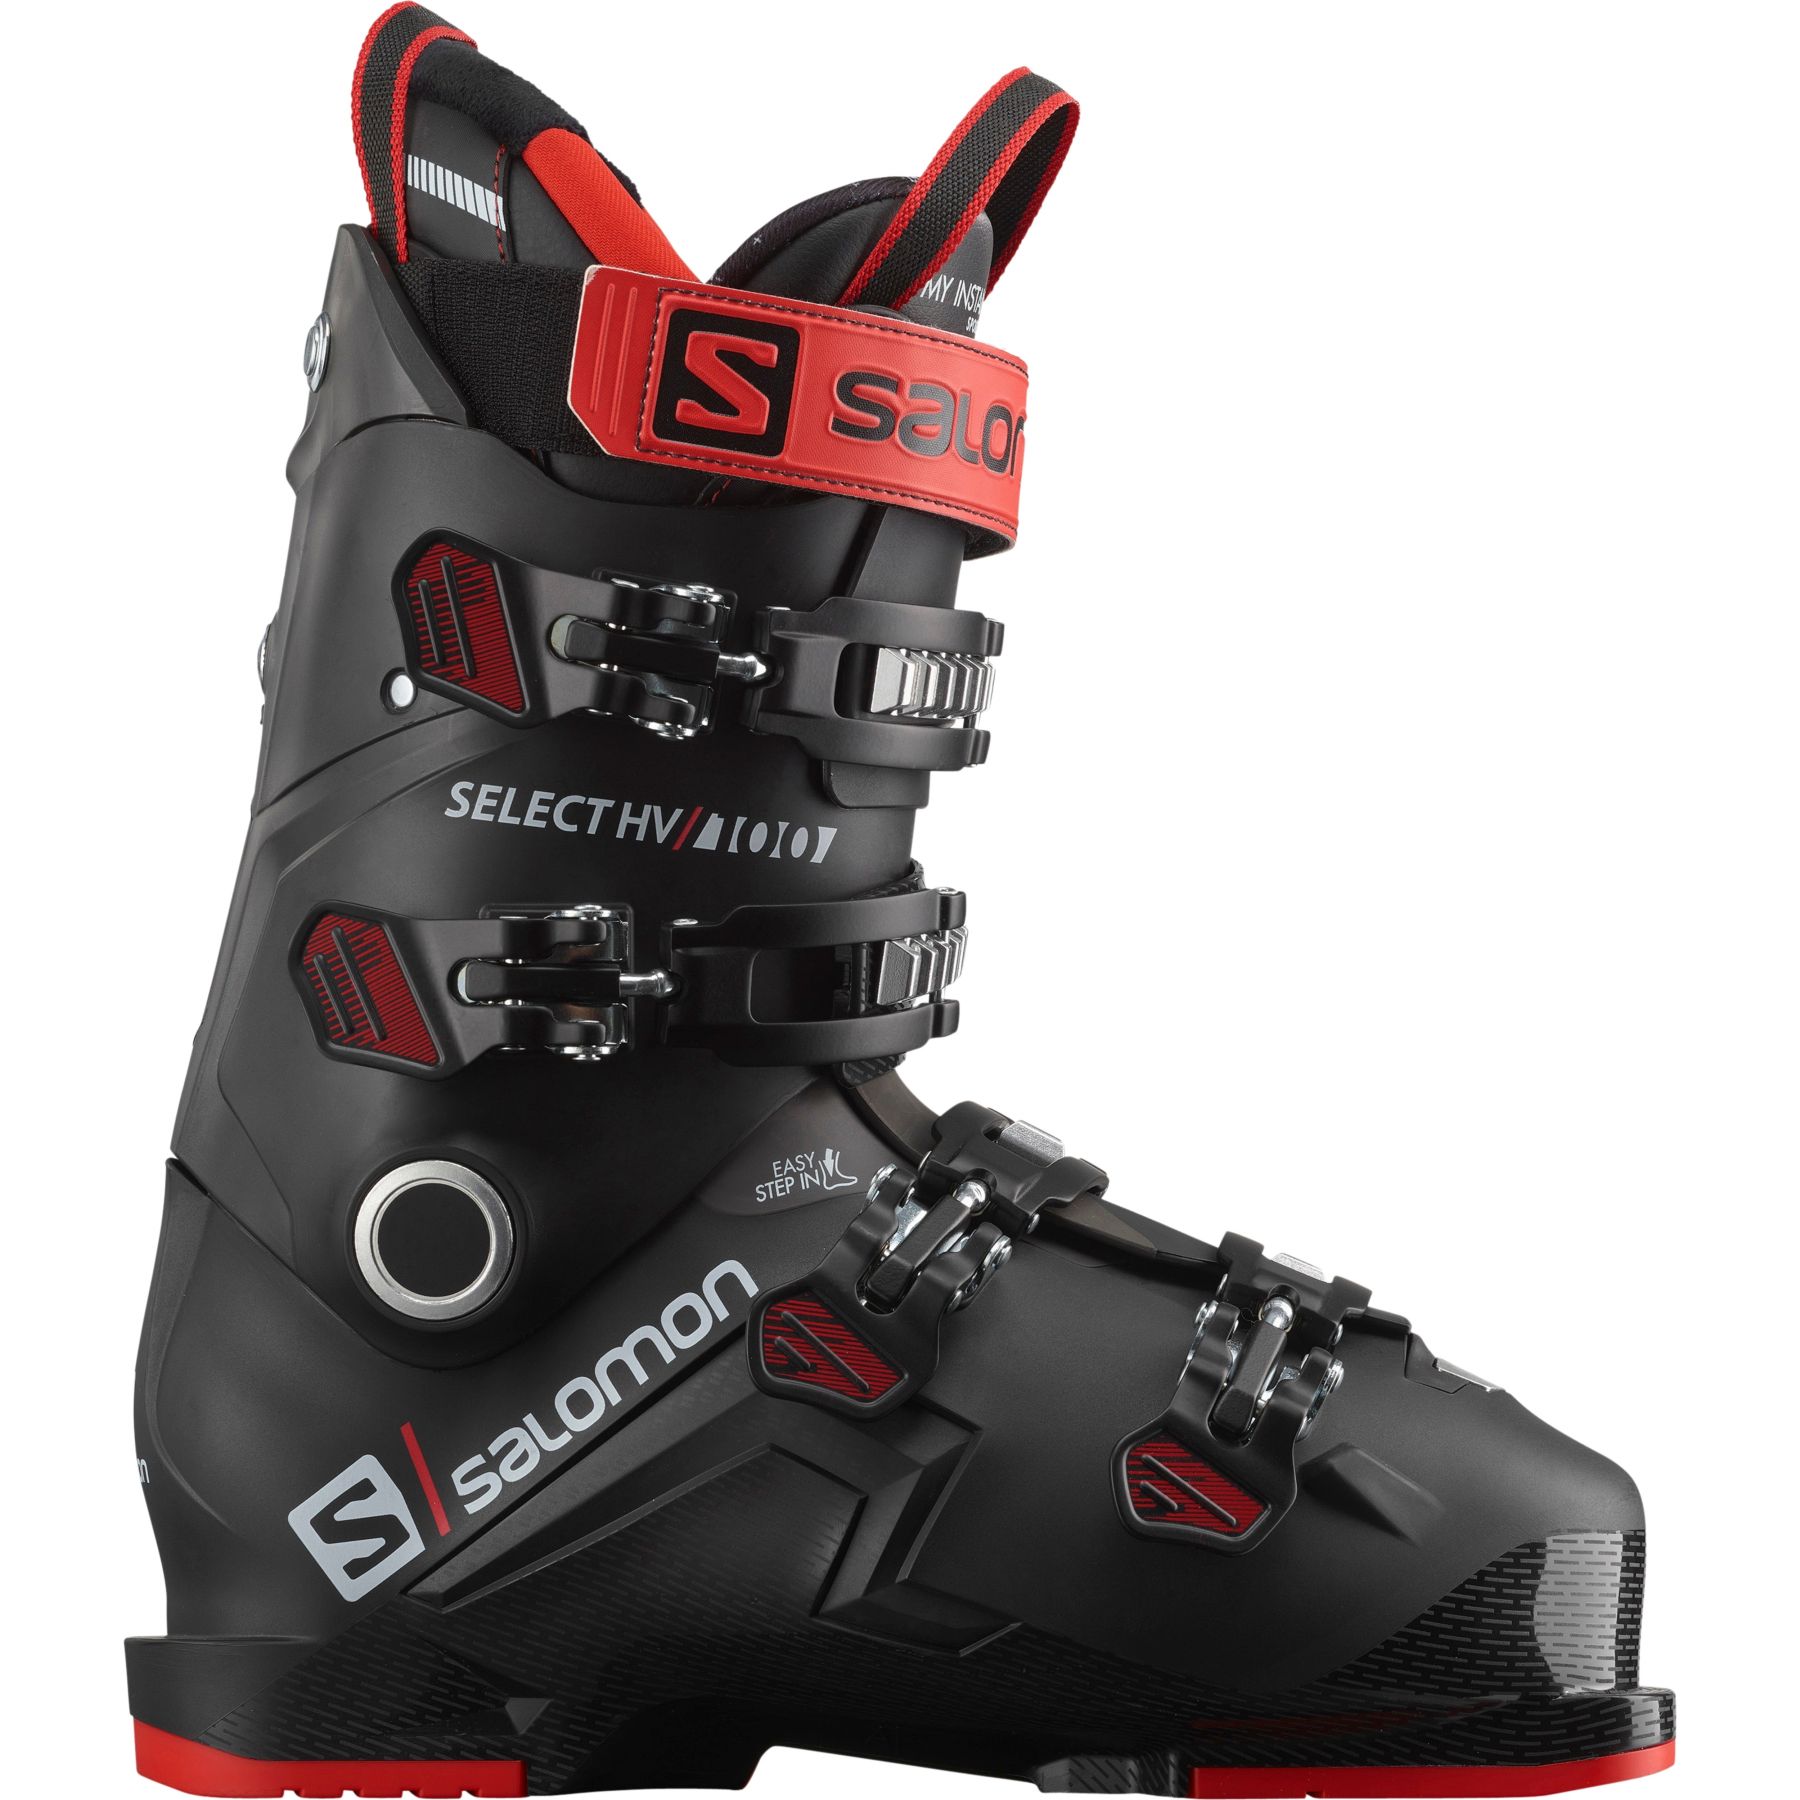 Billede af Salomon Select HV 100, skistøvler, herre, sort/rød hos Skisport.dk